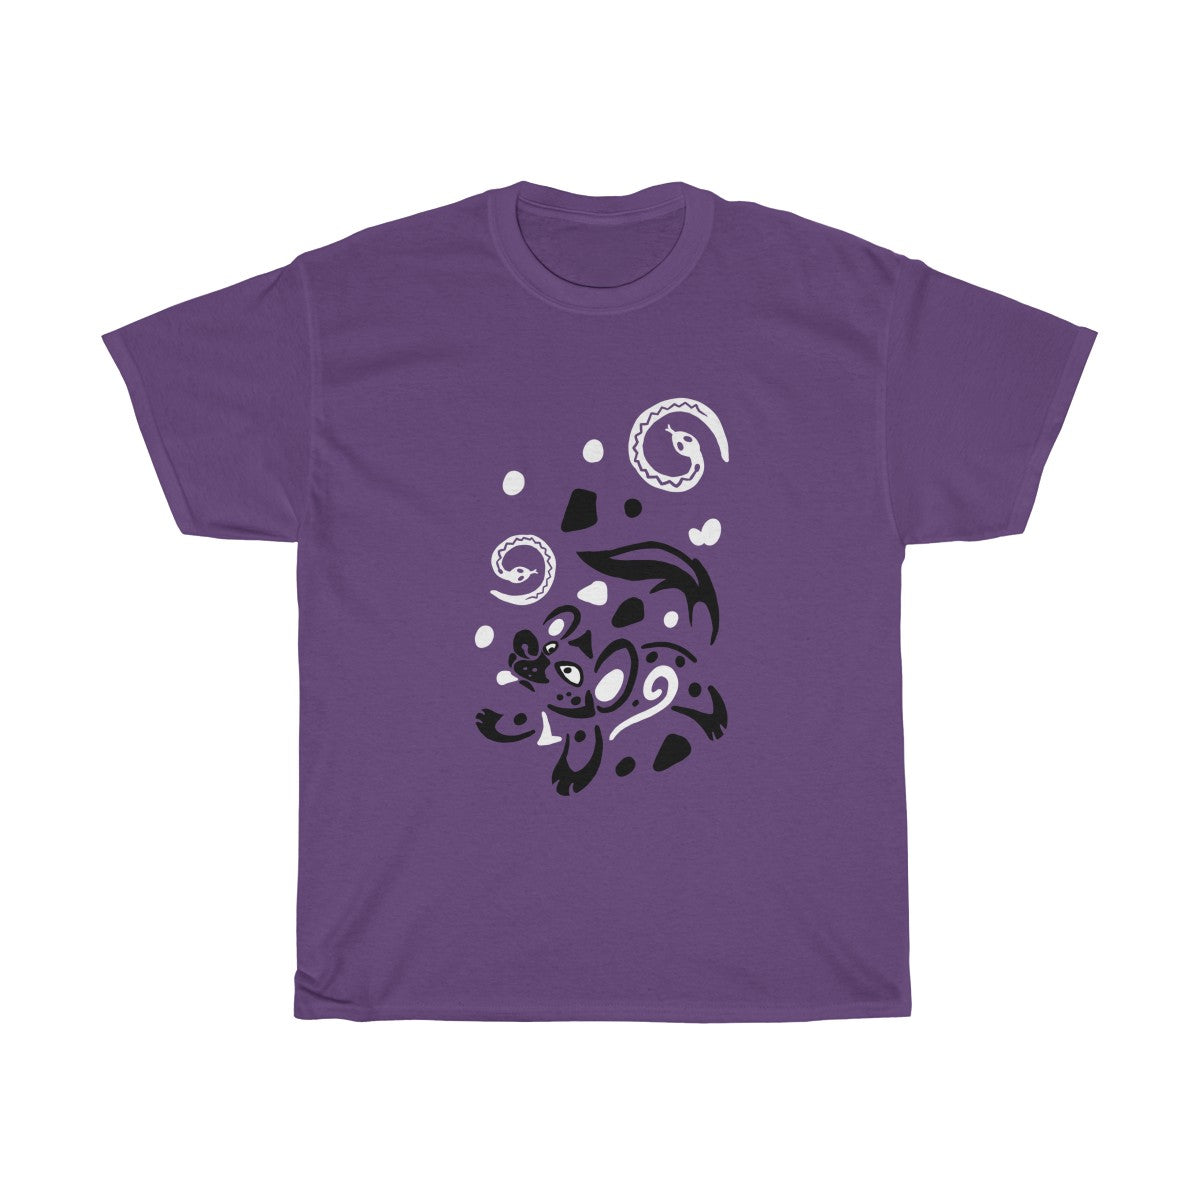 Yeens & Sneks - T-Shirts T-Shirt Dire Creatures Purple S 